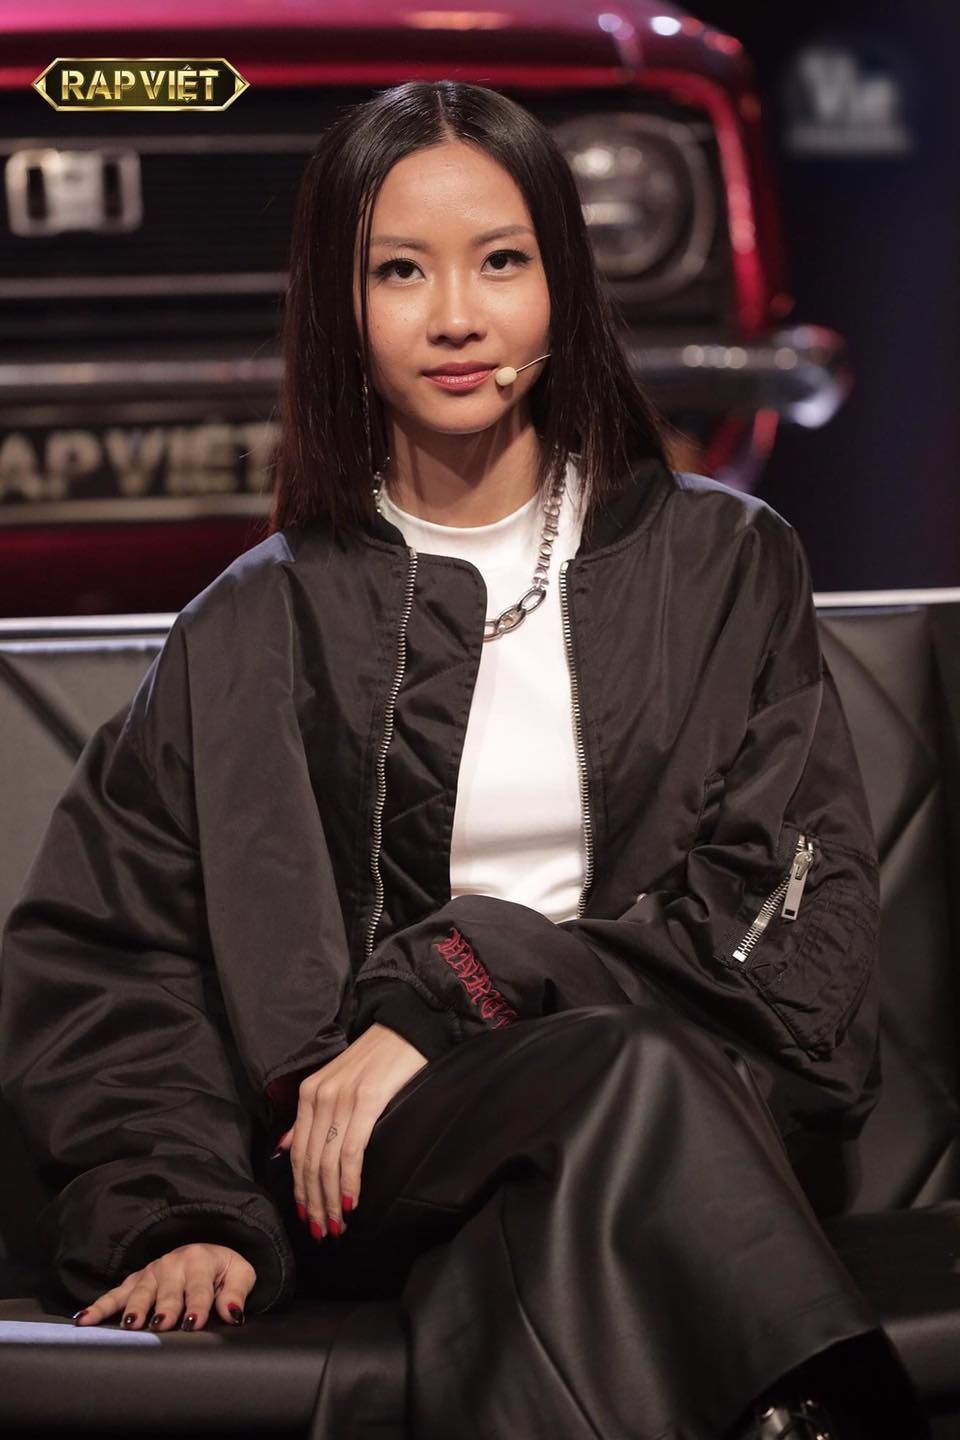  
Suboi thể hiện đẳng cấp của rapper nữ trên "ghế nóng" Rap Việt (Ảnh: Rap Việt).